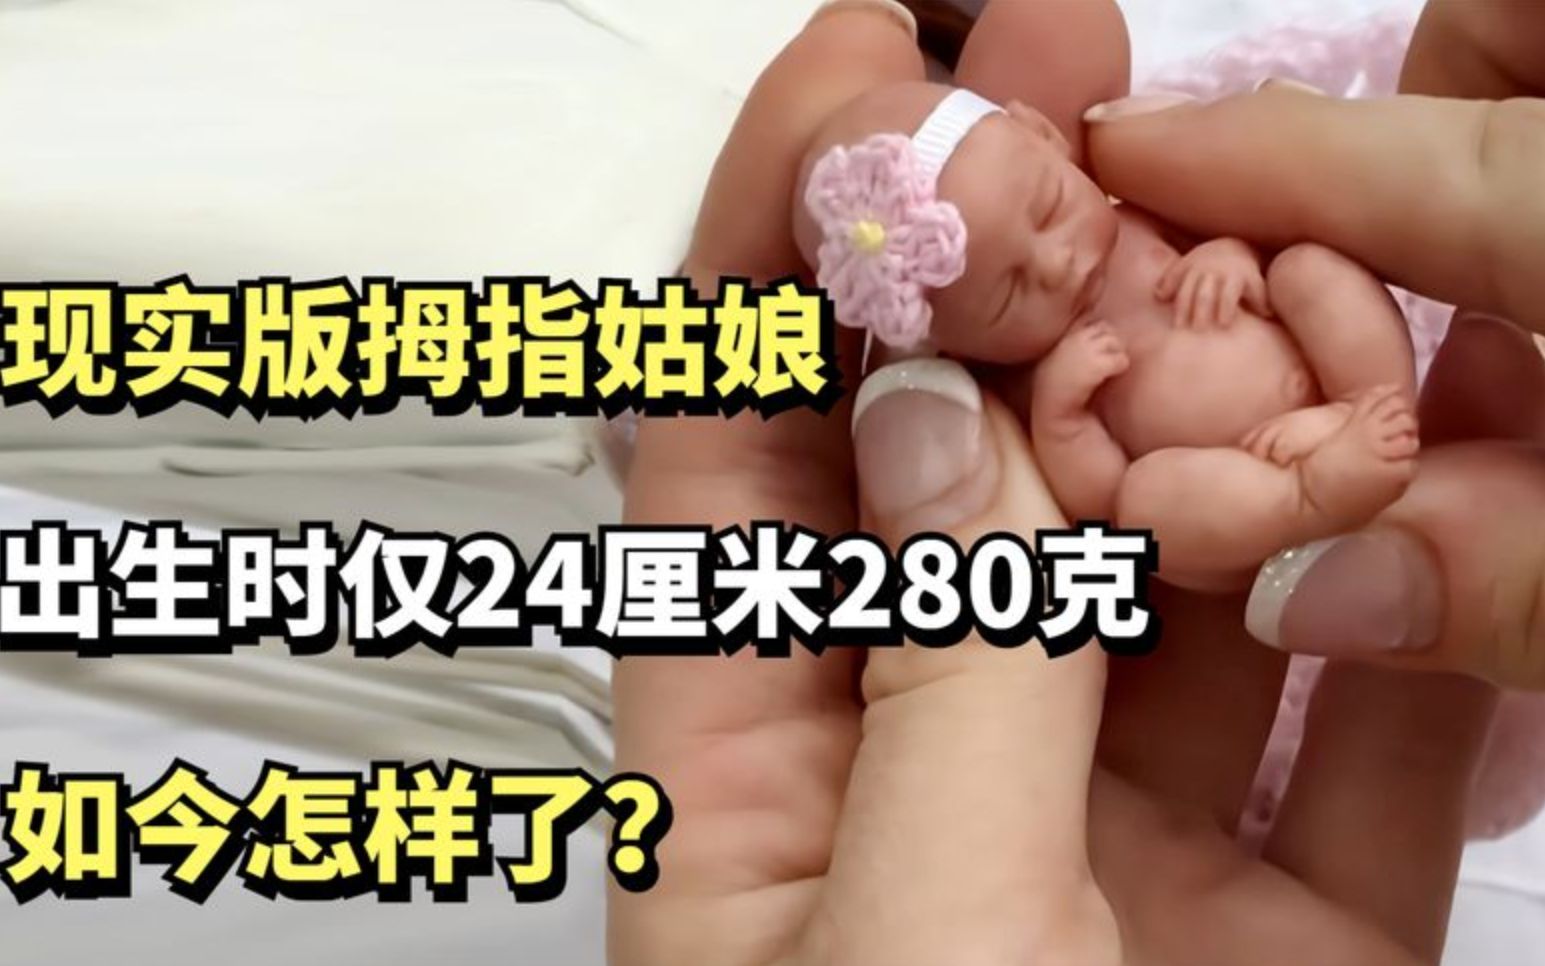 现实版拇指姑娘，出生时仅24厘米280克，如今怎样了？